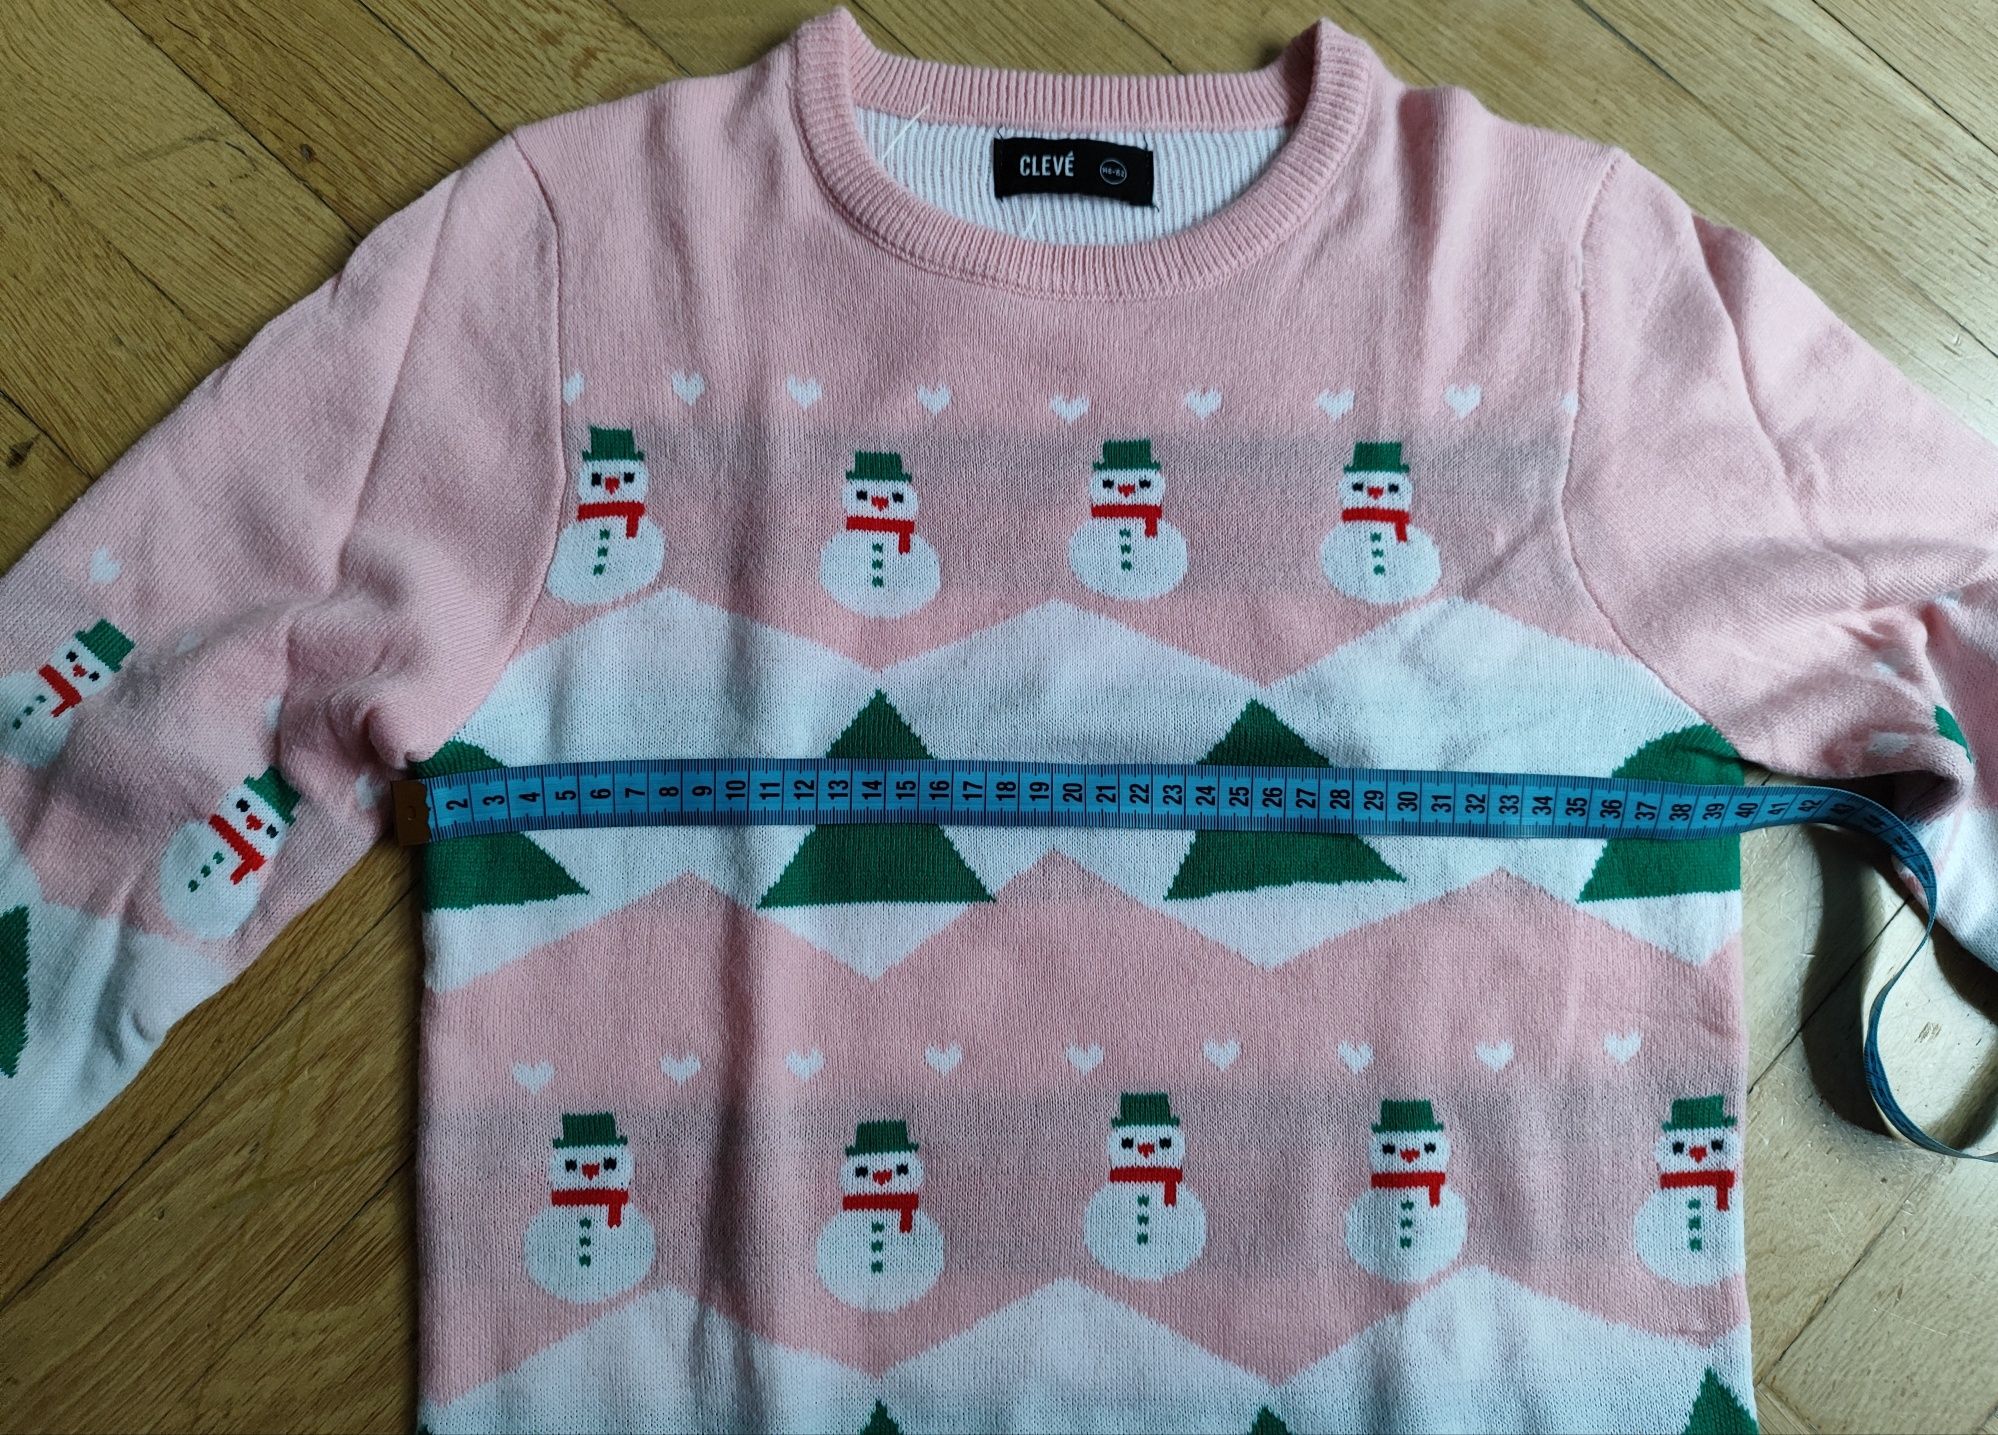 Sweter dziecięcy świąteczny